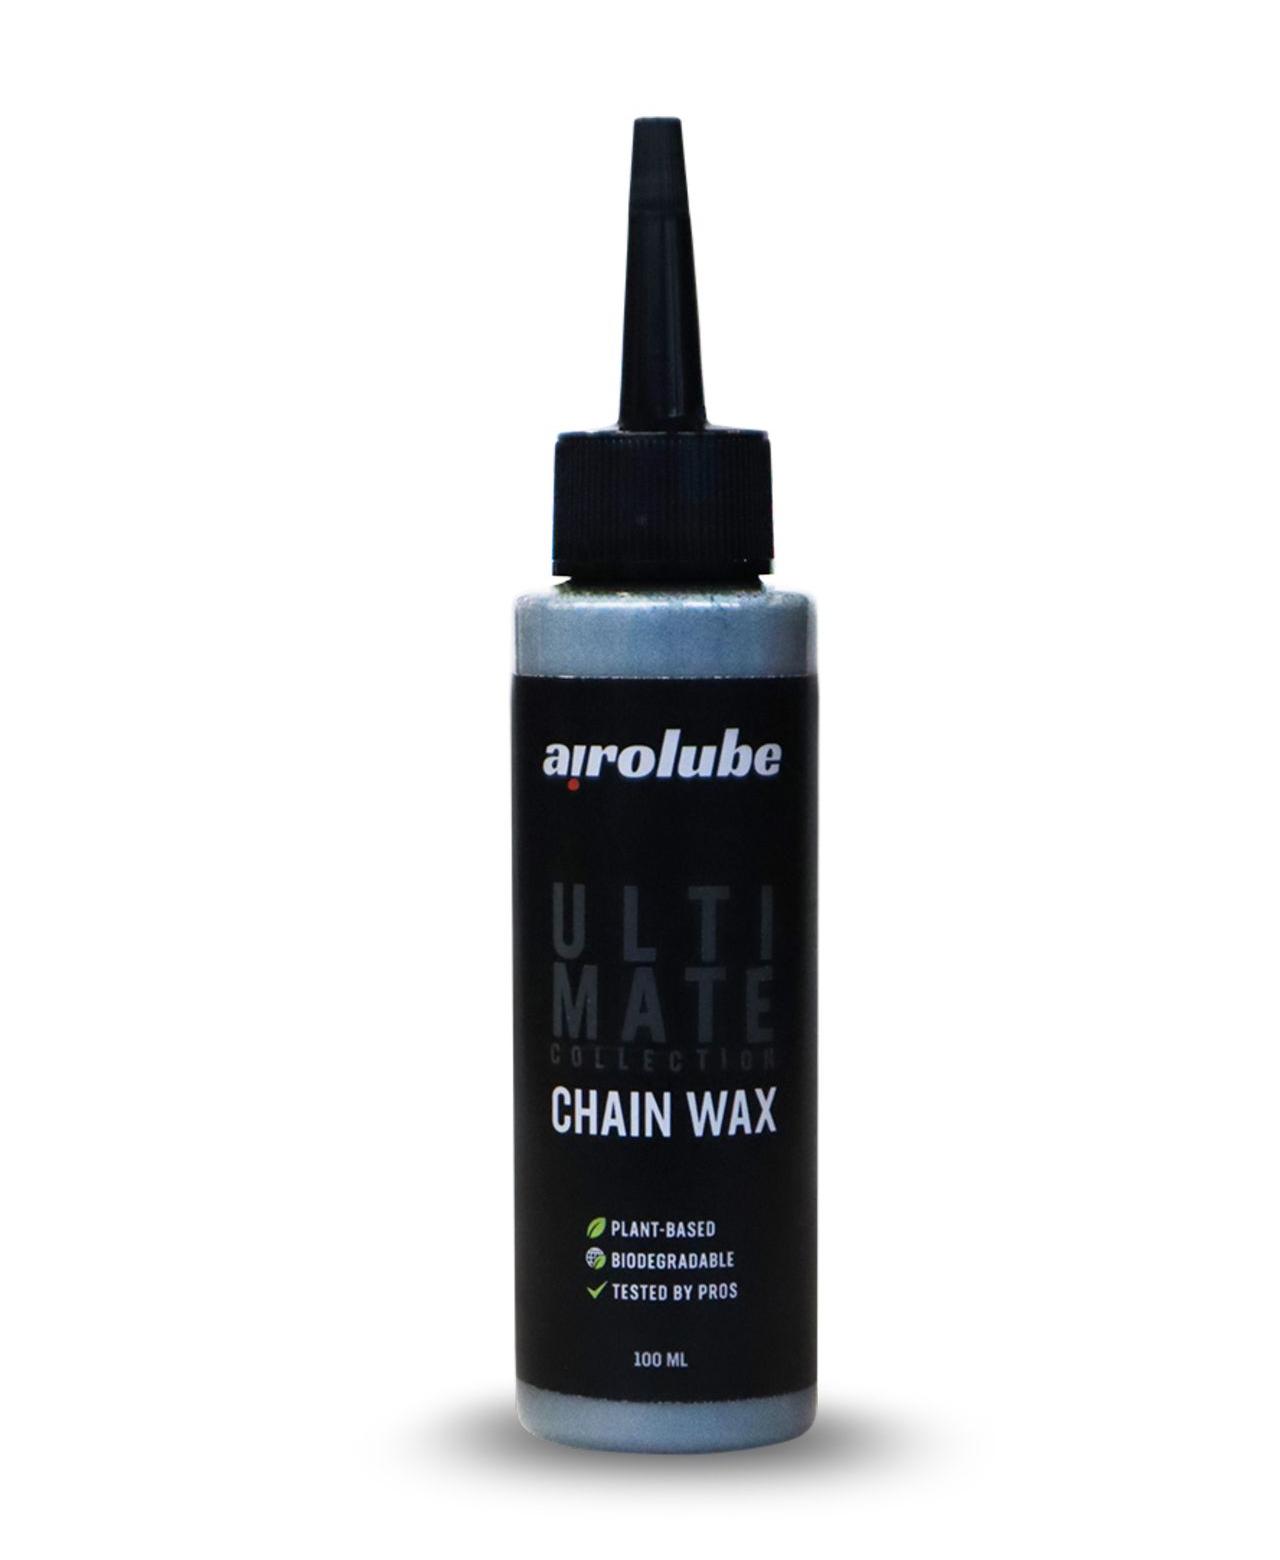 Ultimate Chain Wax